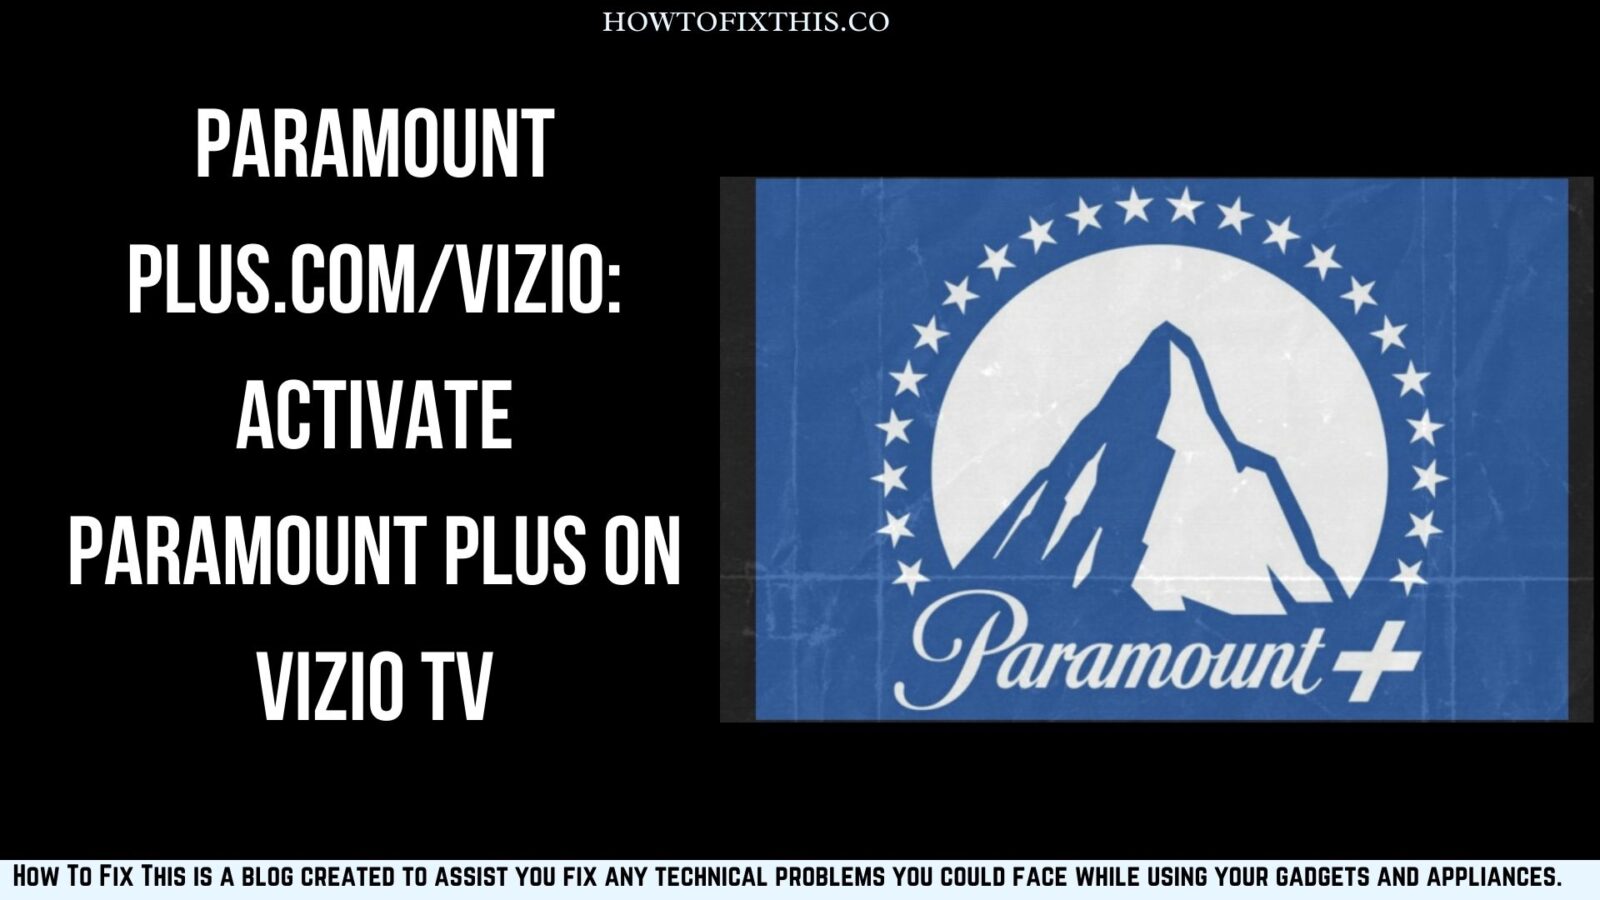 Paramount Plus.Com/Vizio: Activate Paramount Plus on Vizio TV